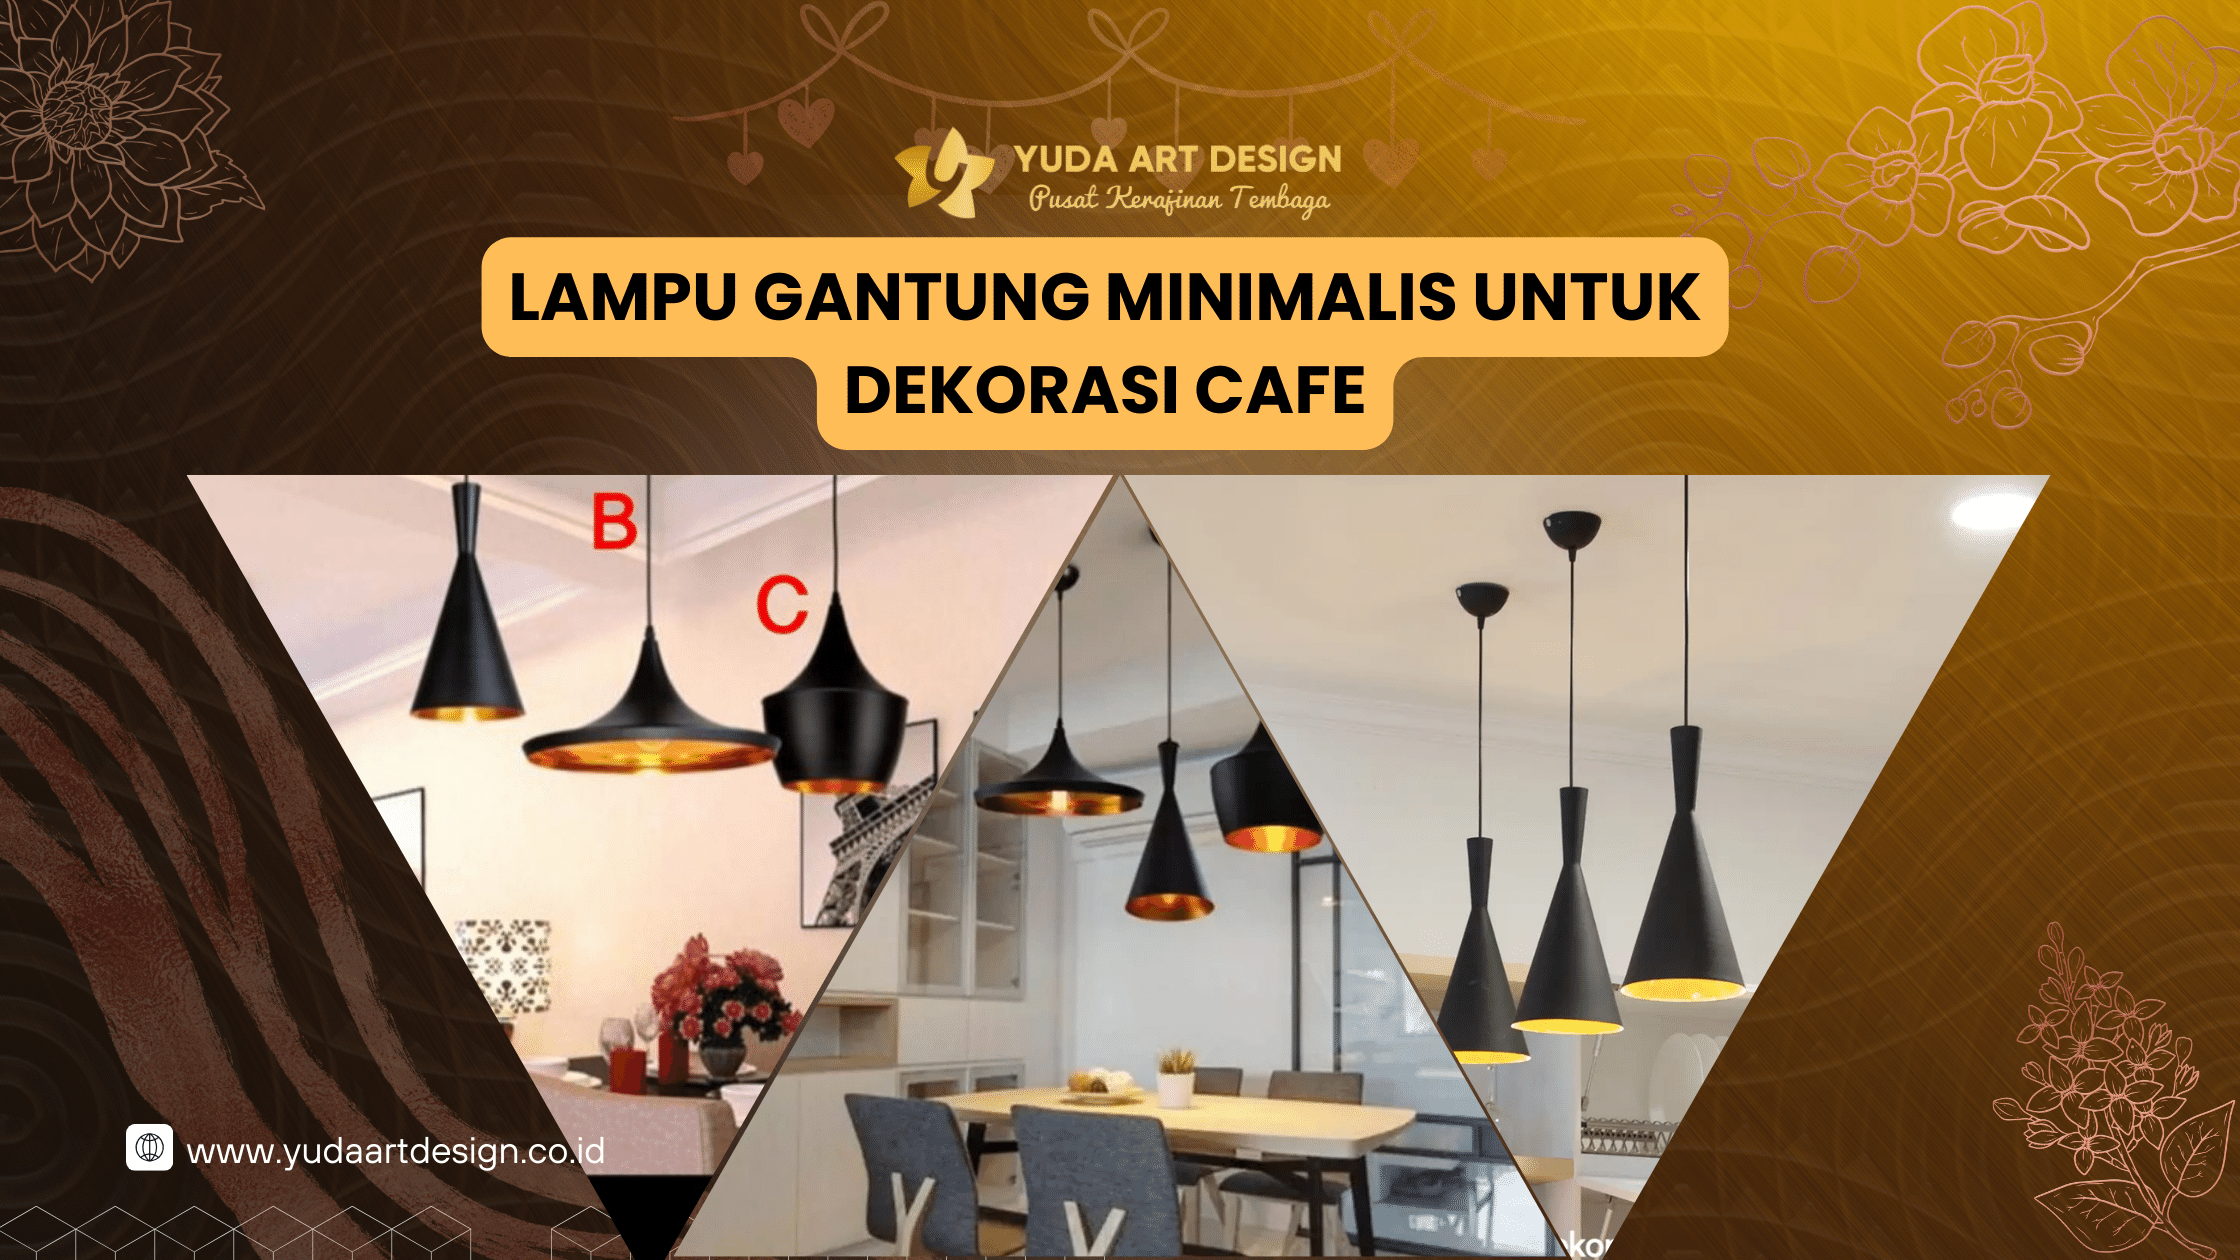 Lampu Gantung Minimalis untuk Dekorasi Cafe